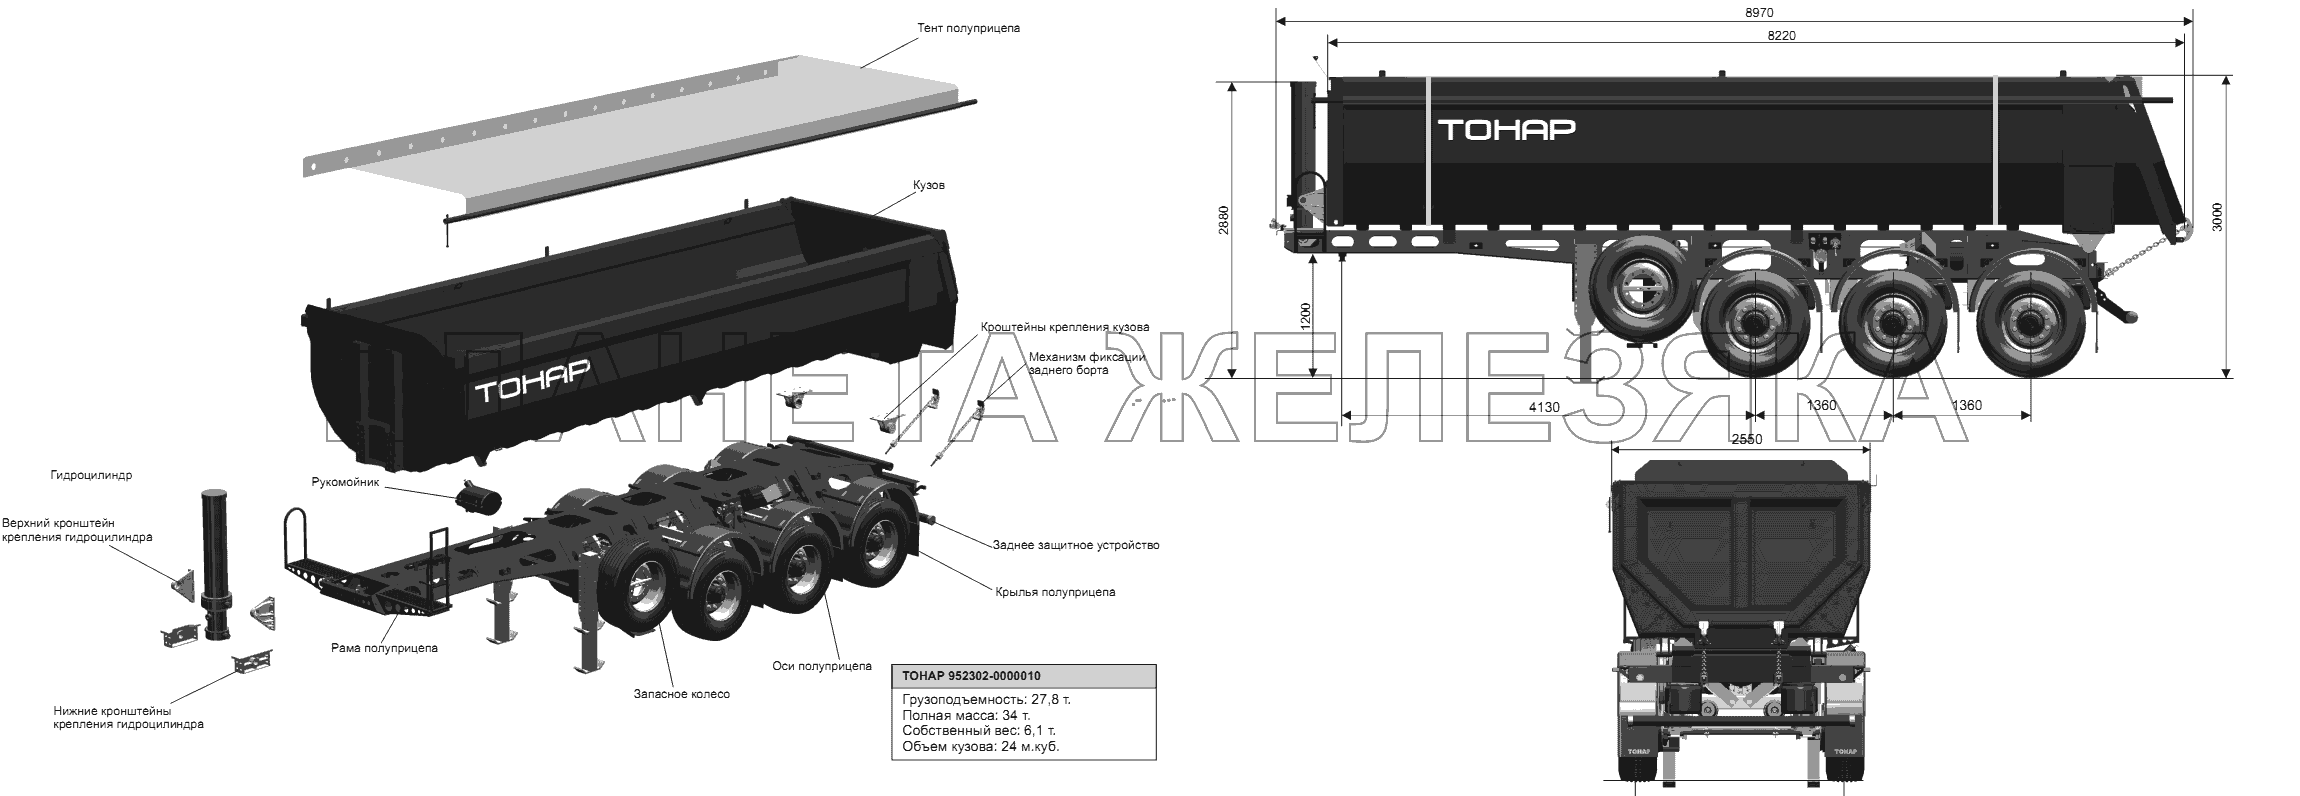 Общий вид полуприцепа модели 952302-0000010 Тонар-952302